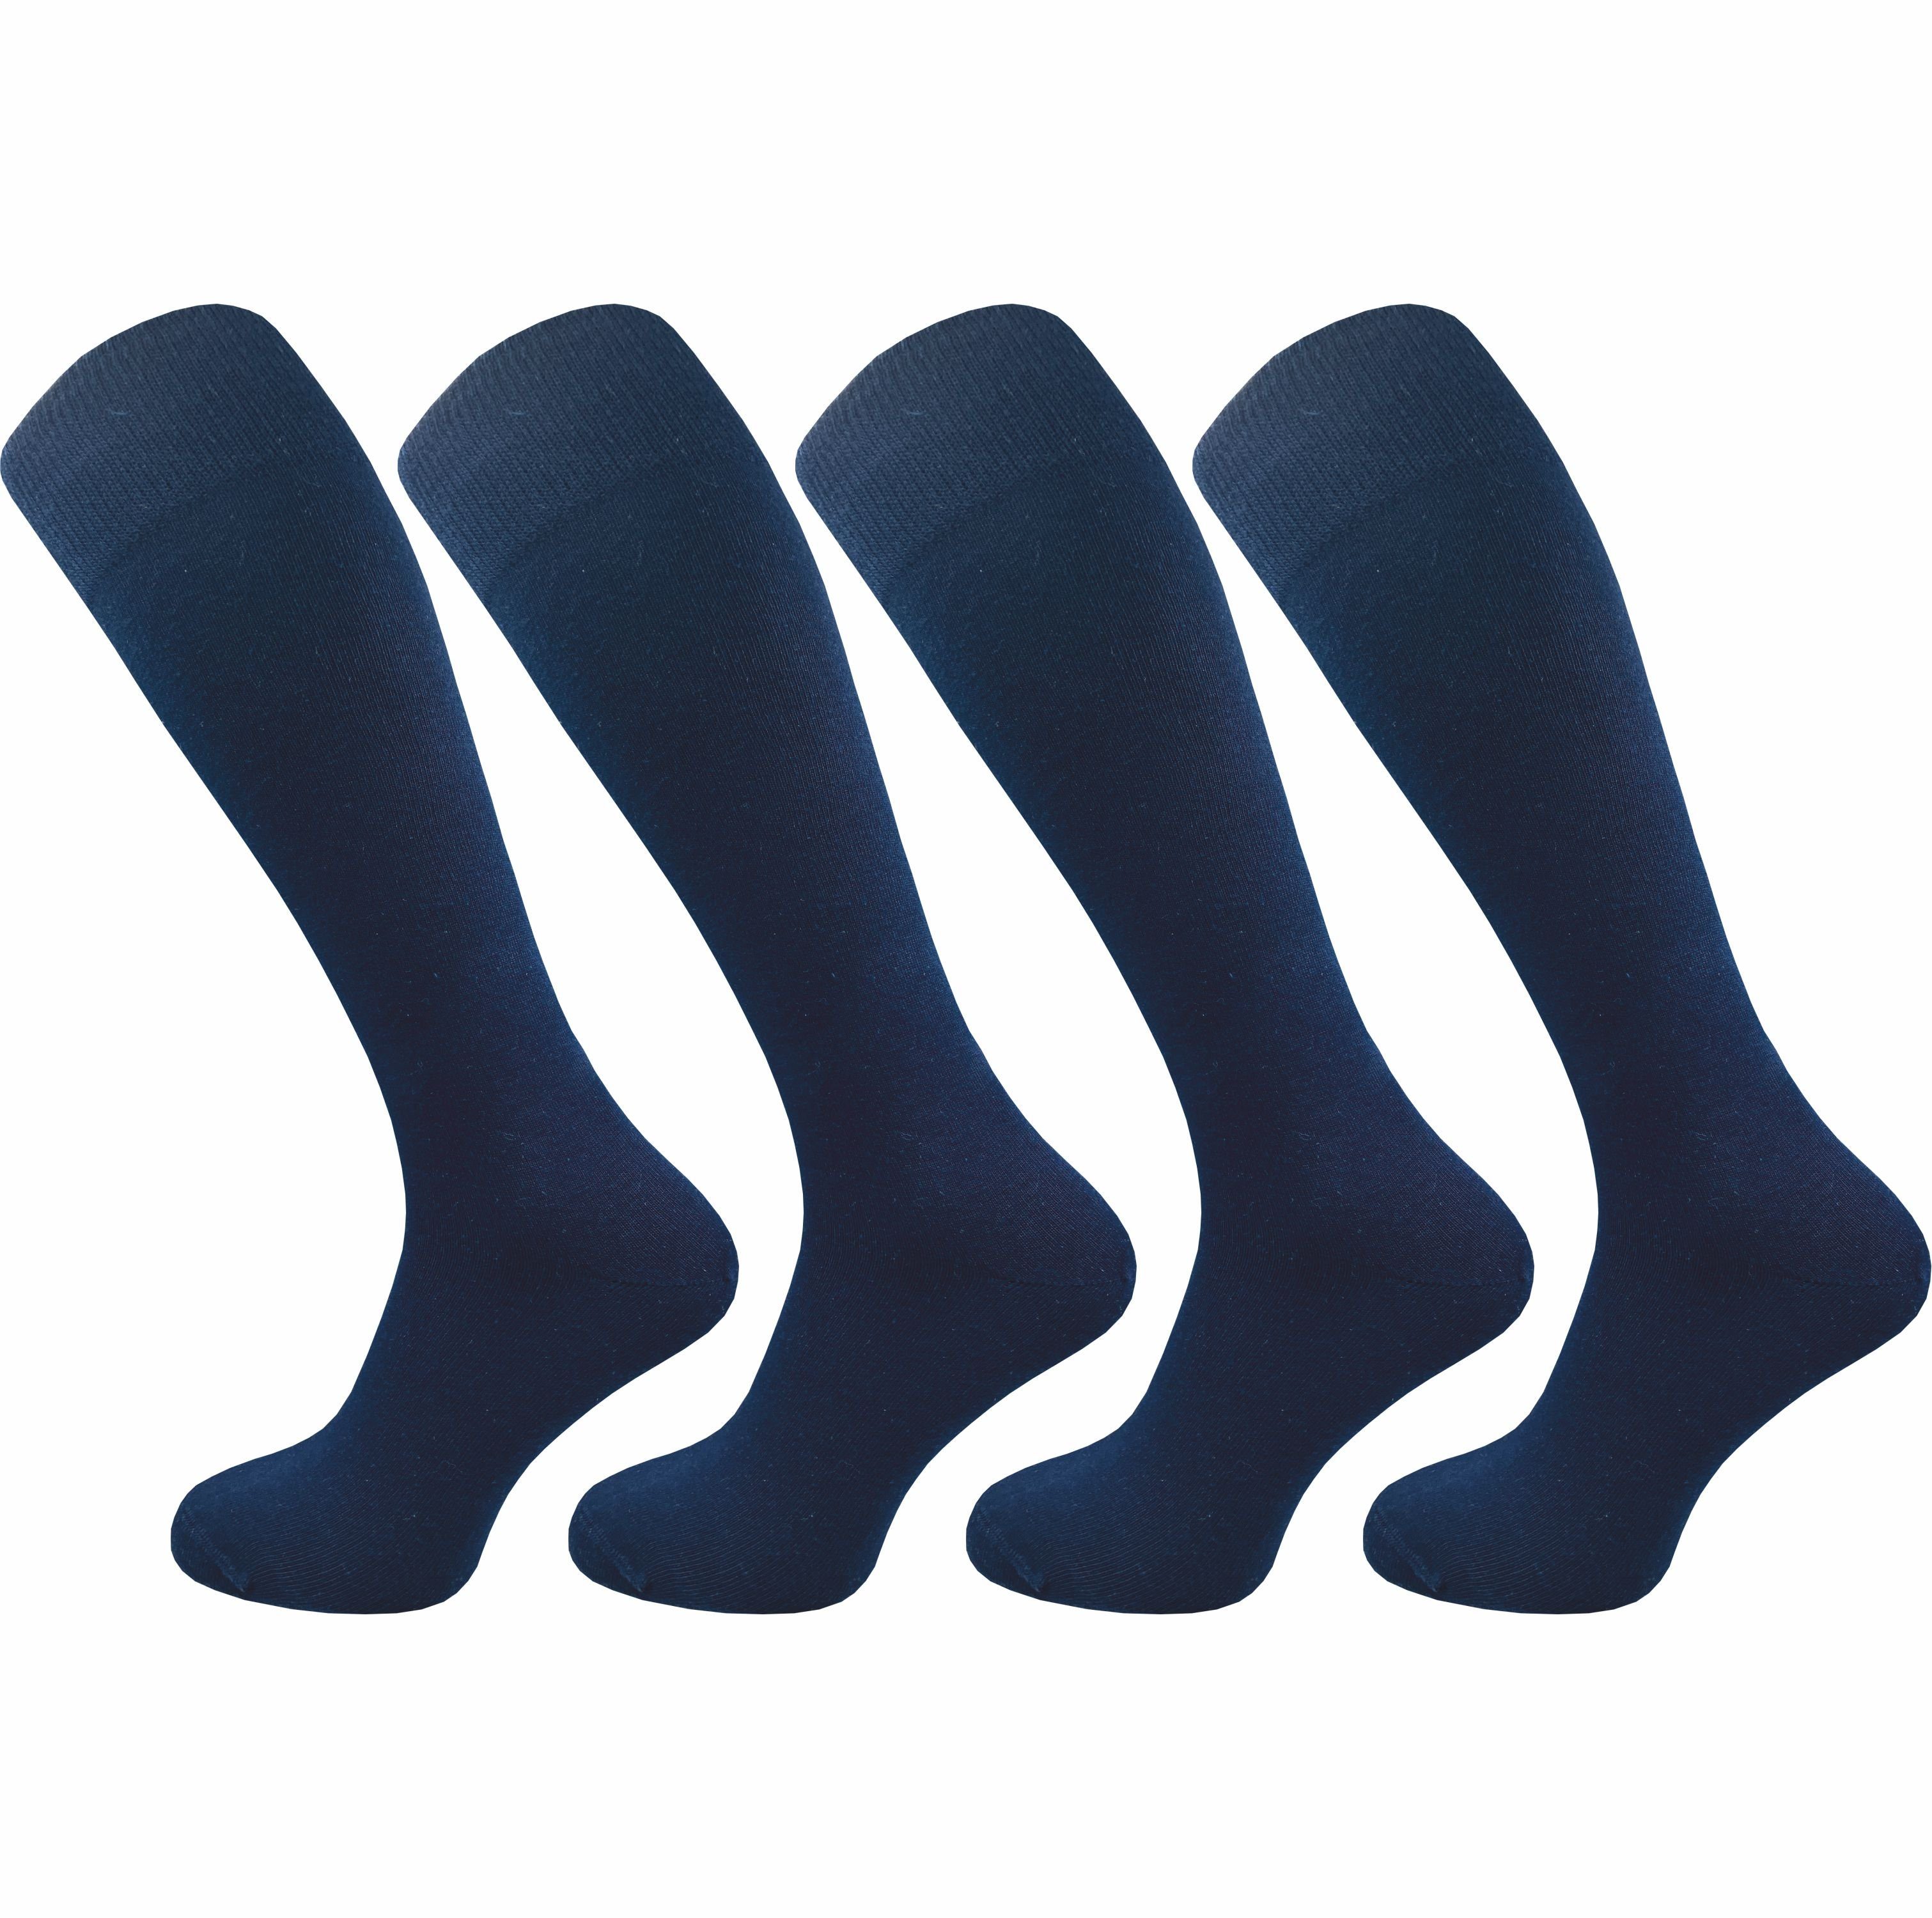 GAWILO Kniestrümpfe für Damen aus Baumwolle - extra weich & ohne drückende Naht (4 Paar) Lange Socken mit speziellem Komfortbund, der nicht einschneidet blau